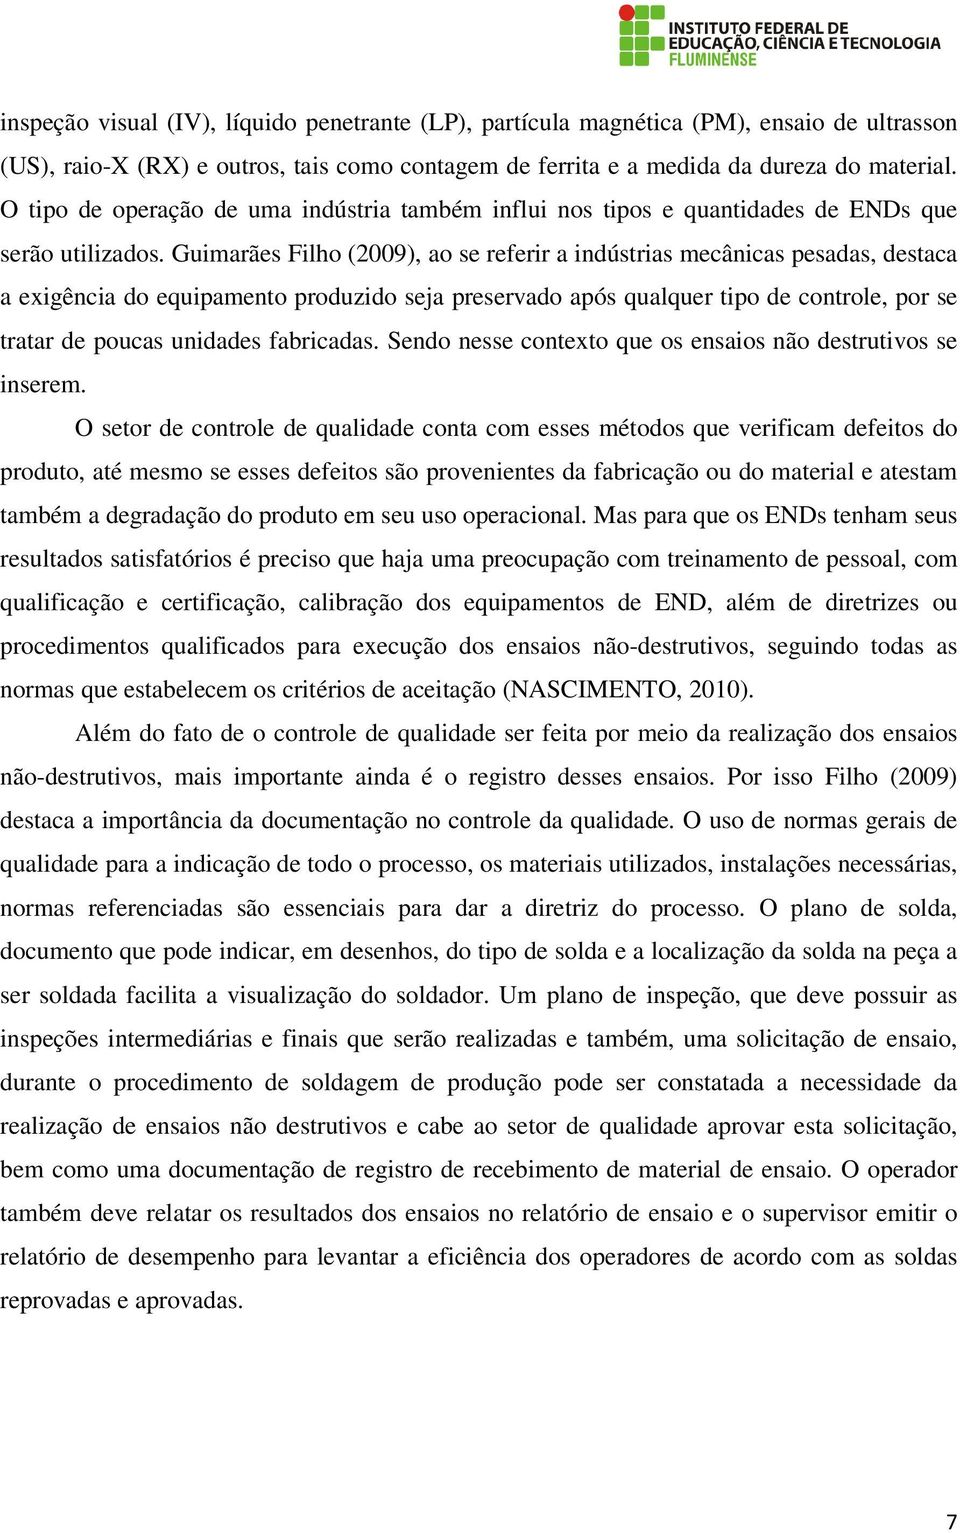 Guimarães Filho (2009), ao se referir a indústrias mecânicas pesadas, destaca a exigência do equipamento produzido seja preservado após qualquer tipo de controle, por se tratar de poucas unidades